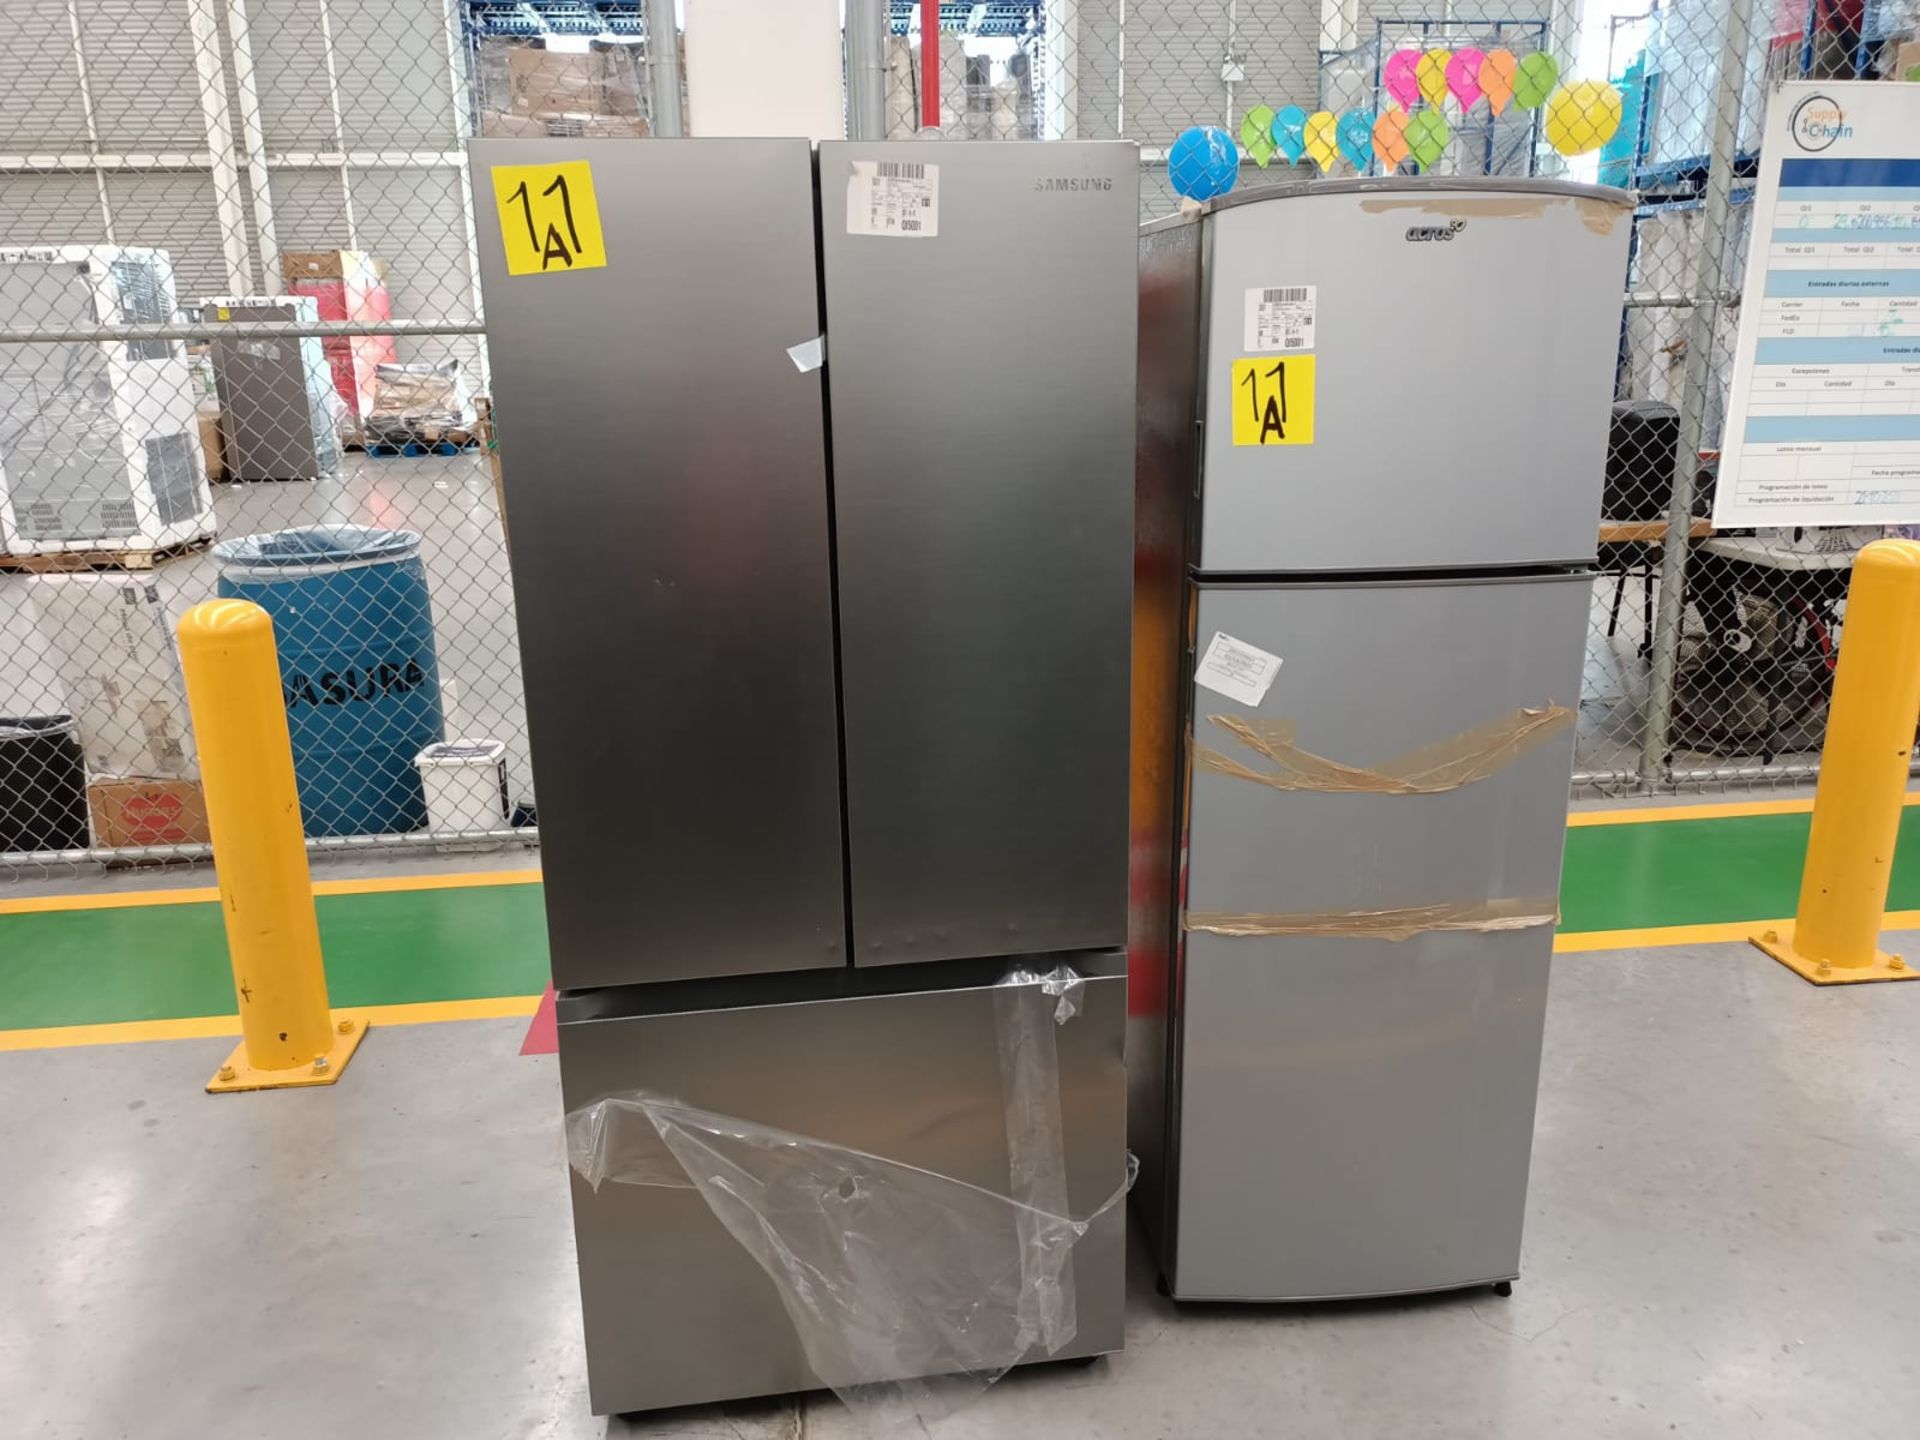 Lote de 2 refrigeradores incluye: 1 refrigerador marca Samsung, modelo RF22A4010S9/EM - Image 2 of 51